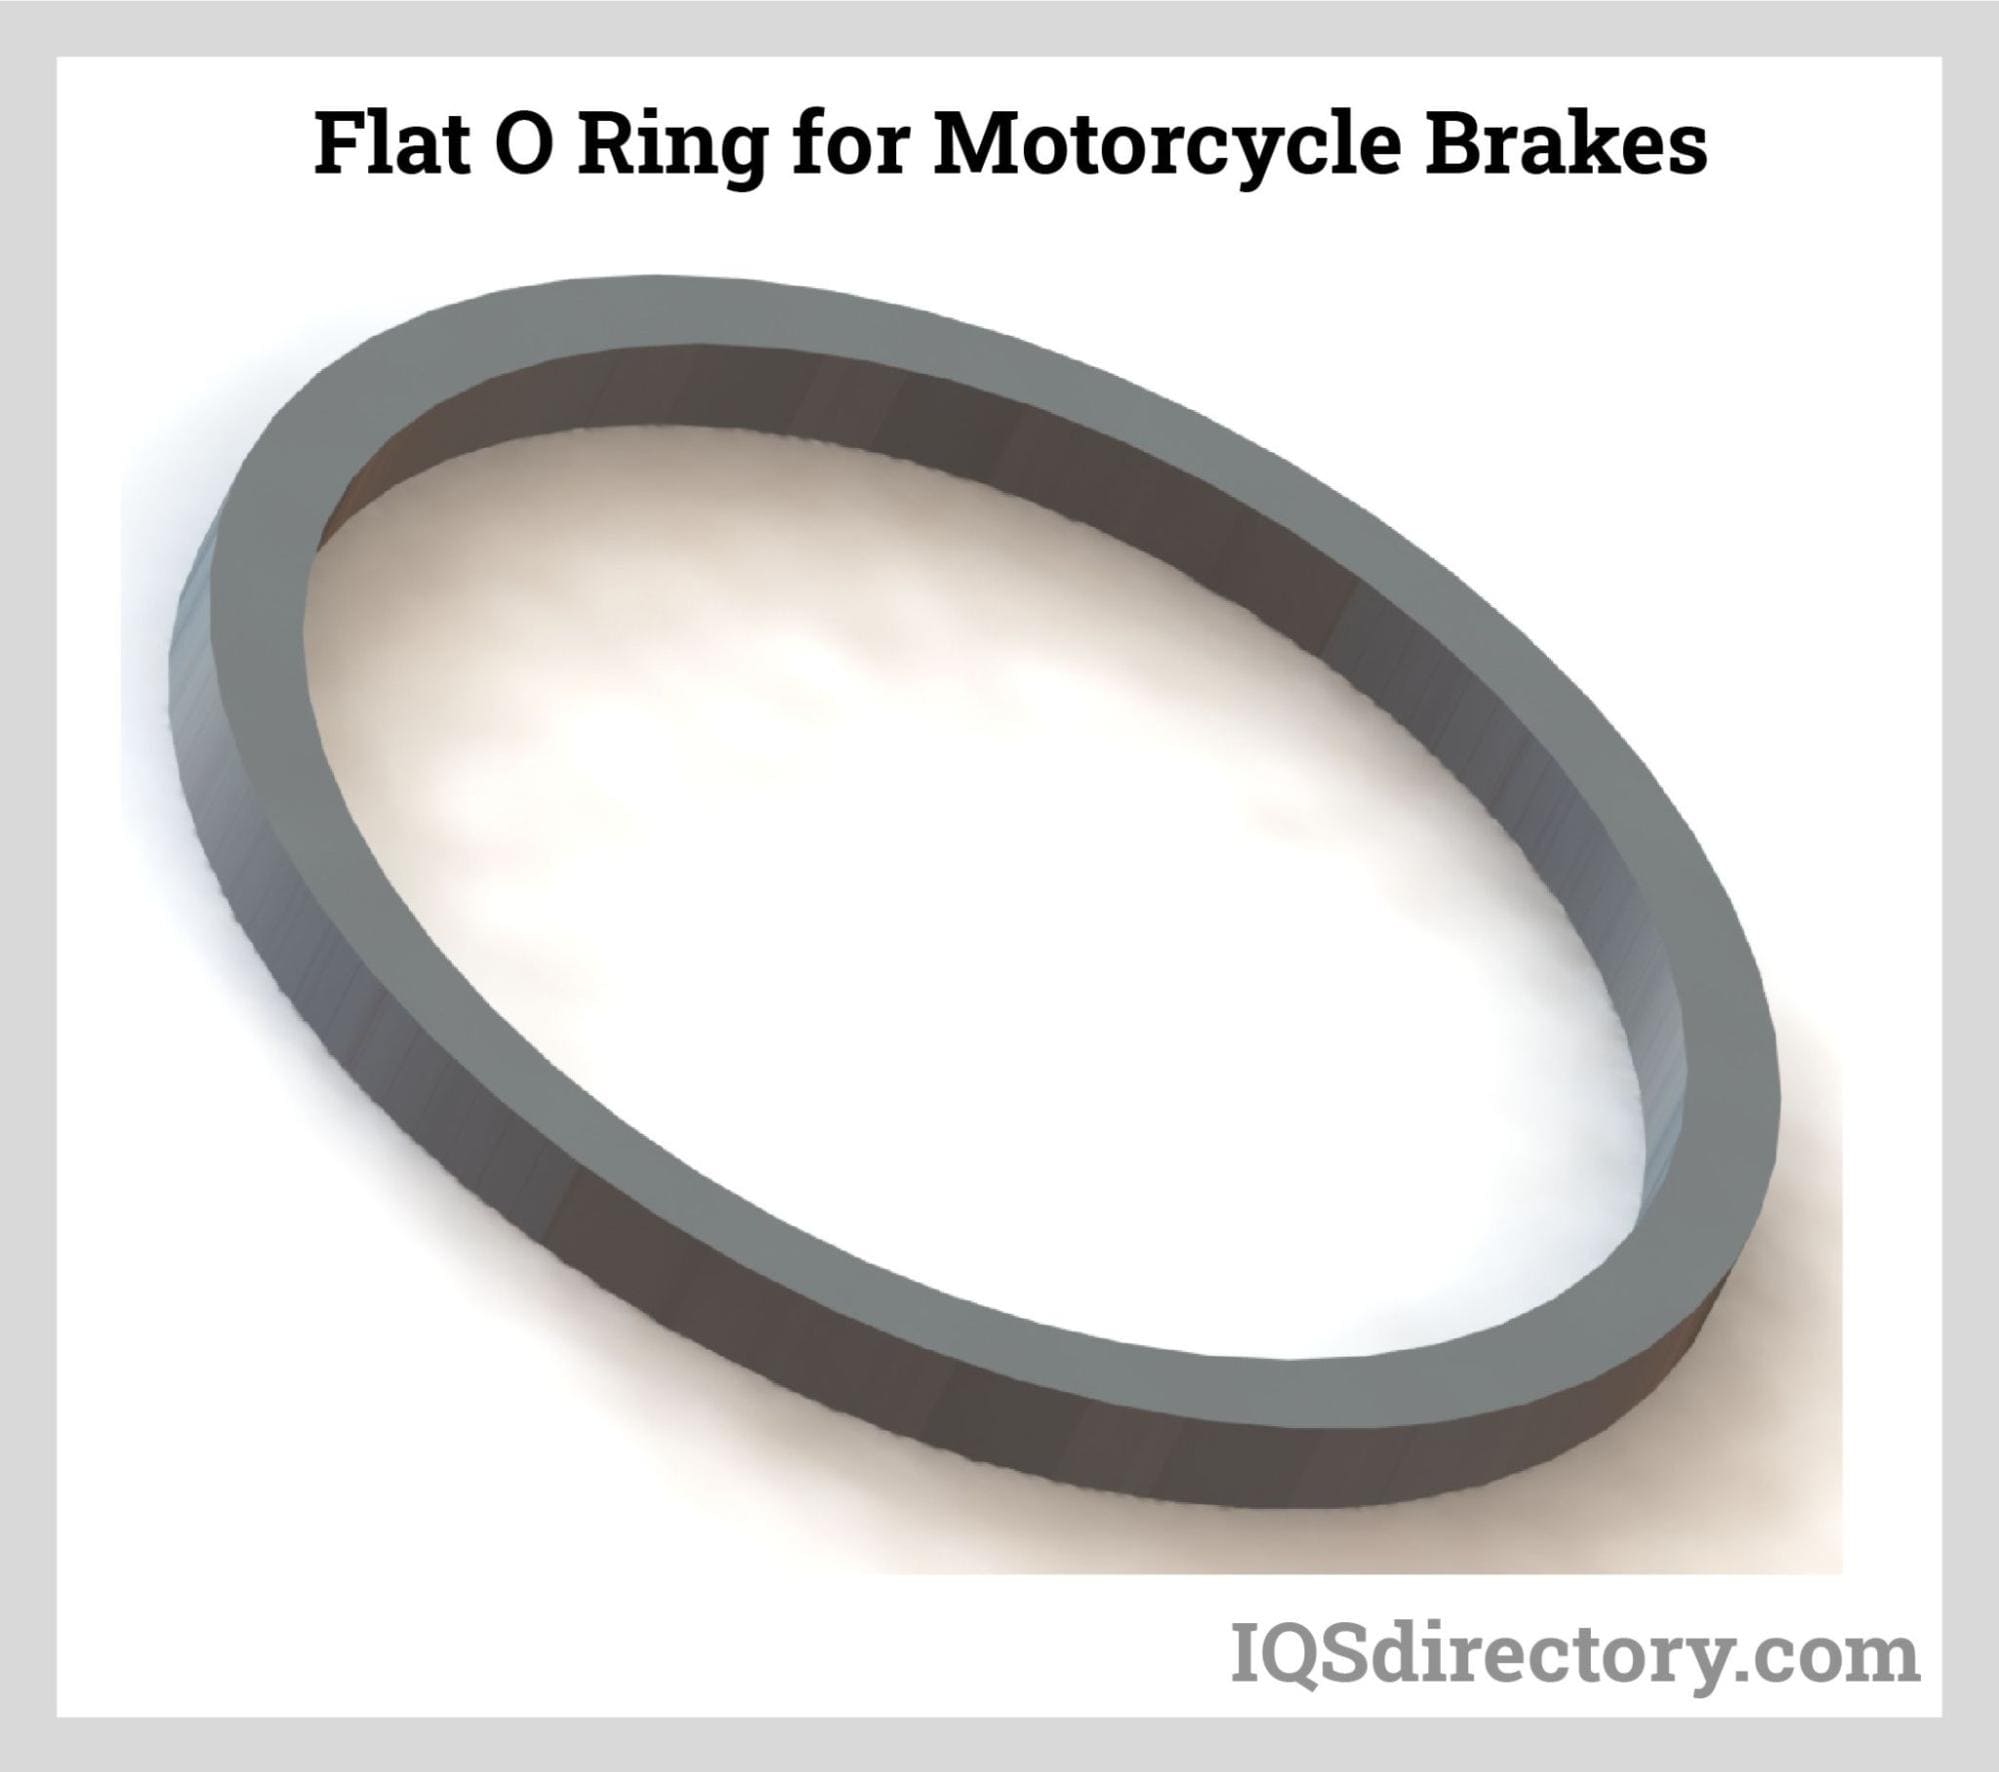 Flat O-Ring Manufacturers